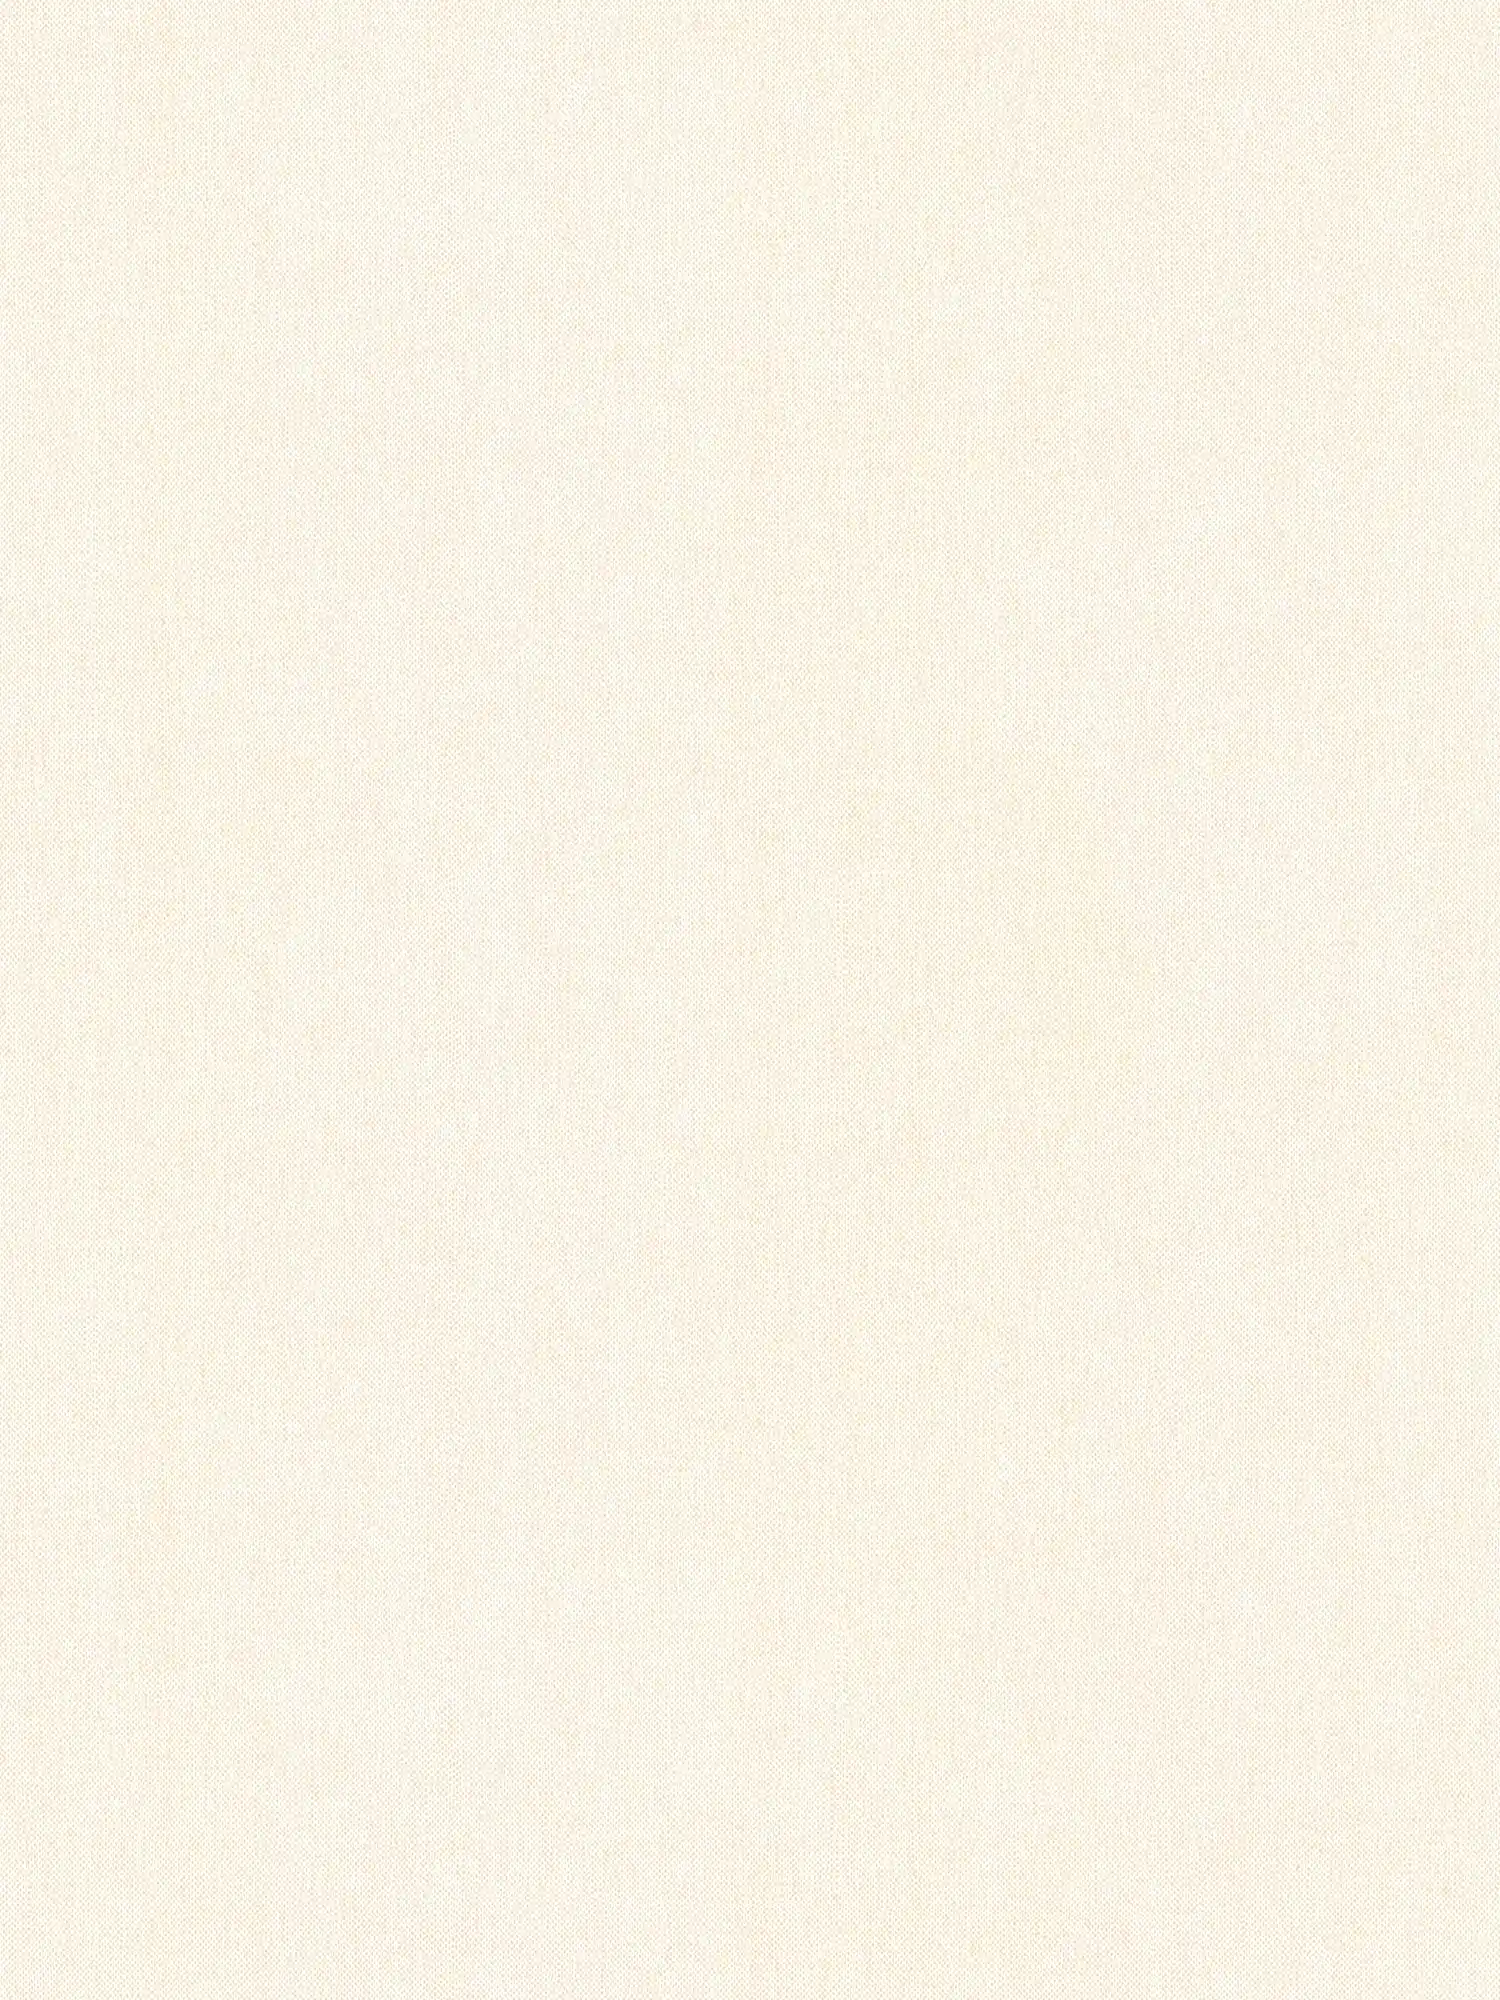 Papier peint Vintage blanc & mat avec structure textile - blanc, crème
